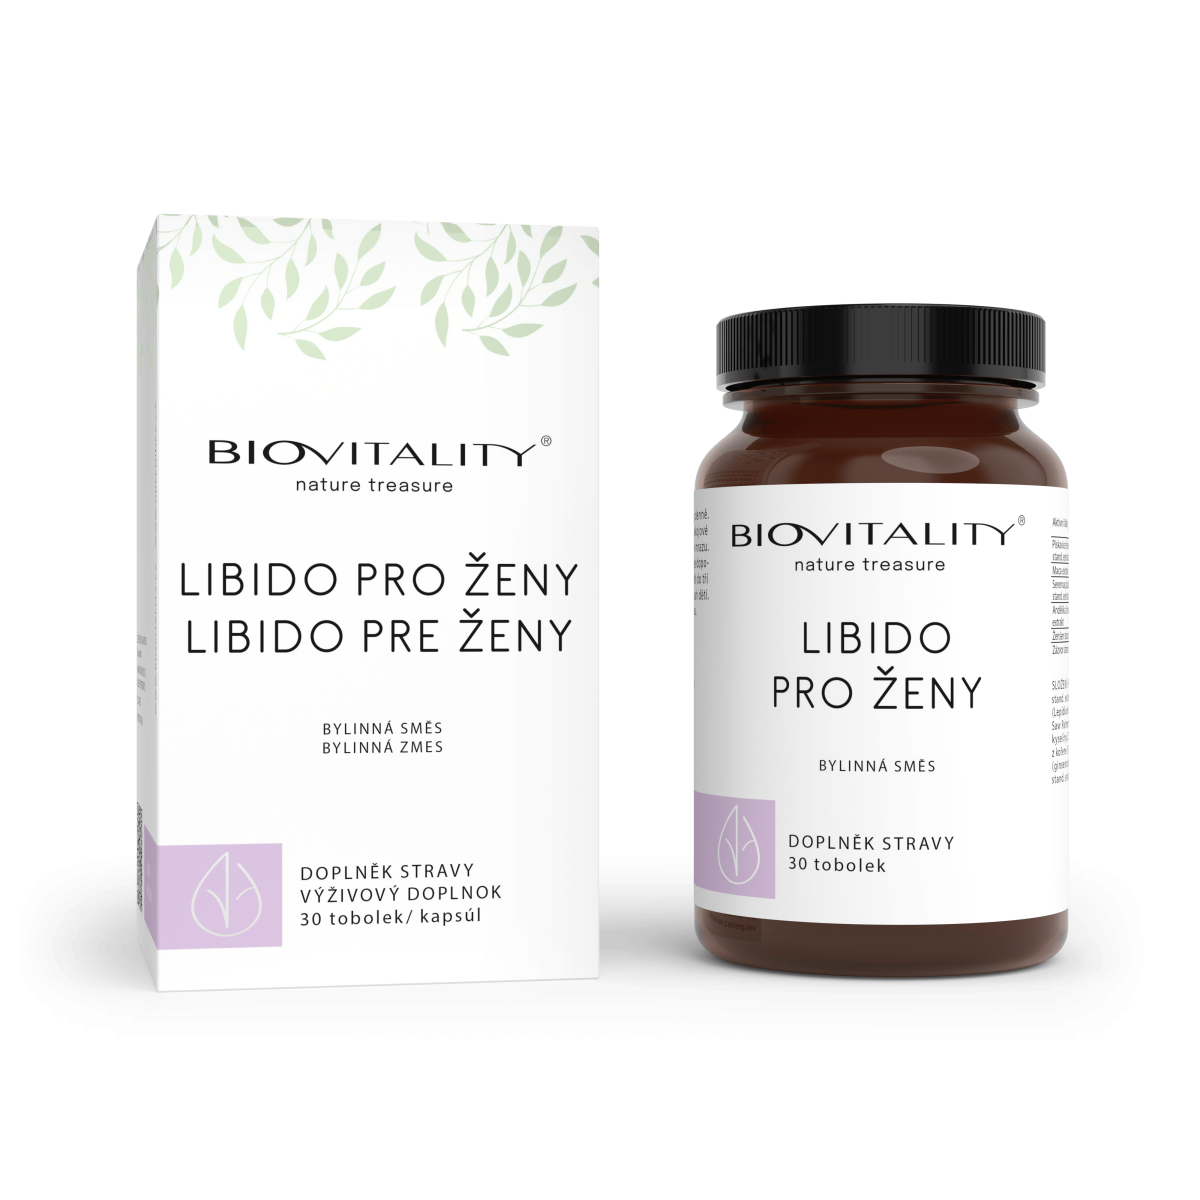 Biovitality Libido pro ženy